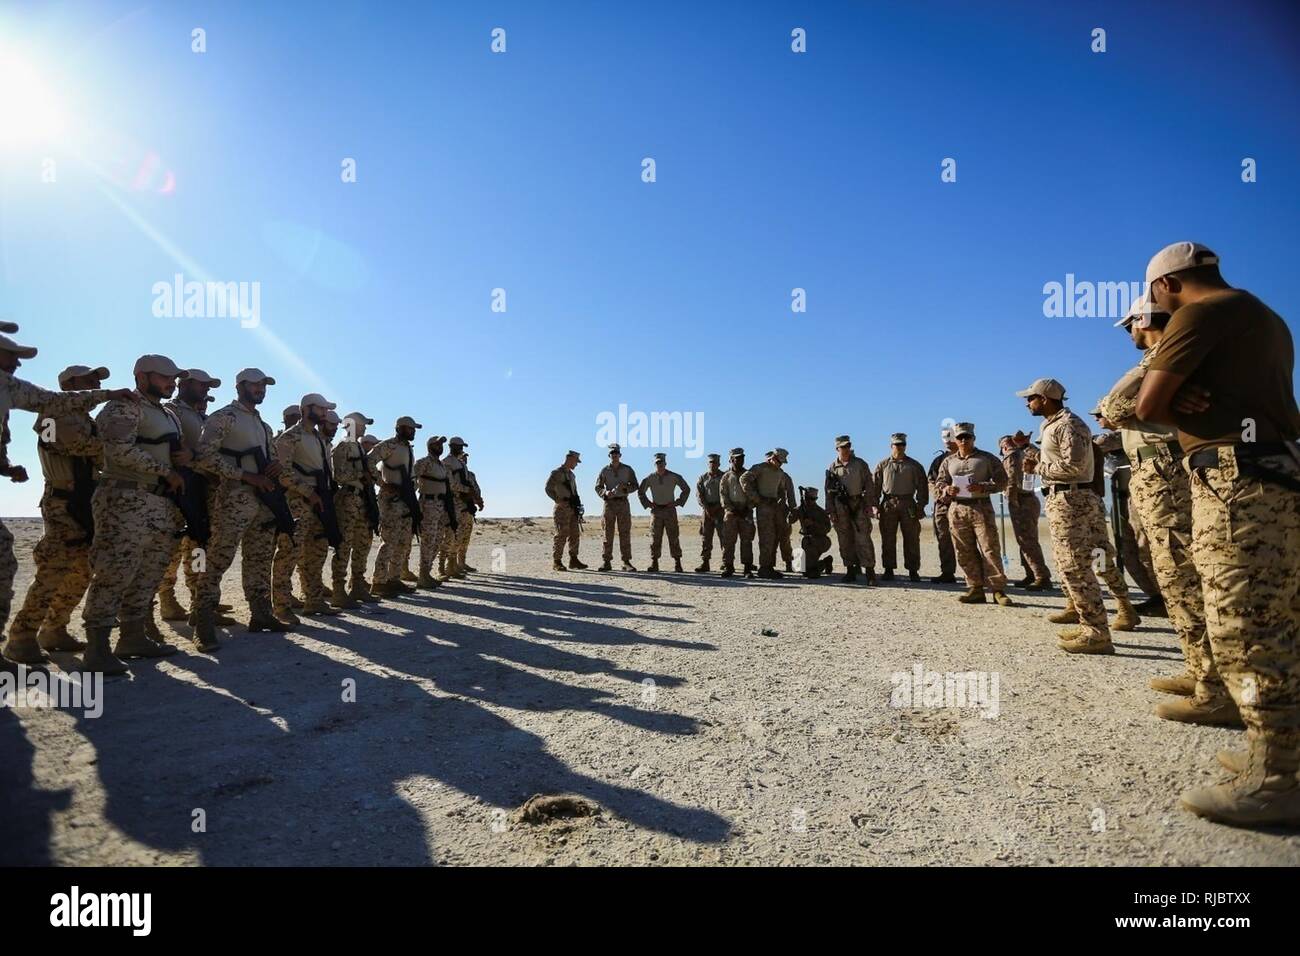 Bahrein (Ene. 14, 2018) Un soldado de la Fuerza de Defensa de Bahrein interpreta instrucciones de Marines adjunta a la flota de equipo de seguridad contra el terrorismo, el Comando Central, un subordinado el mando de la Fuerza Naval Anfibia, Task Force 51, 5ª Brigada Expedicionaria de la Marina - TF 51/5, antes de llevar a cabo Close Quarters Battle la capacitación. TF 51/5 personal participa con frecuencia en el experto en la materia de intercambio con los países socios para compartir la experiencia en sus campos respectivos y aprovechar las capacidades de la nación partners con el fin de aumentar la estabilidad regional y mejorar la interoperabilidad. Foto de stock